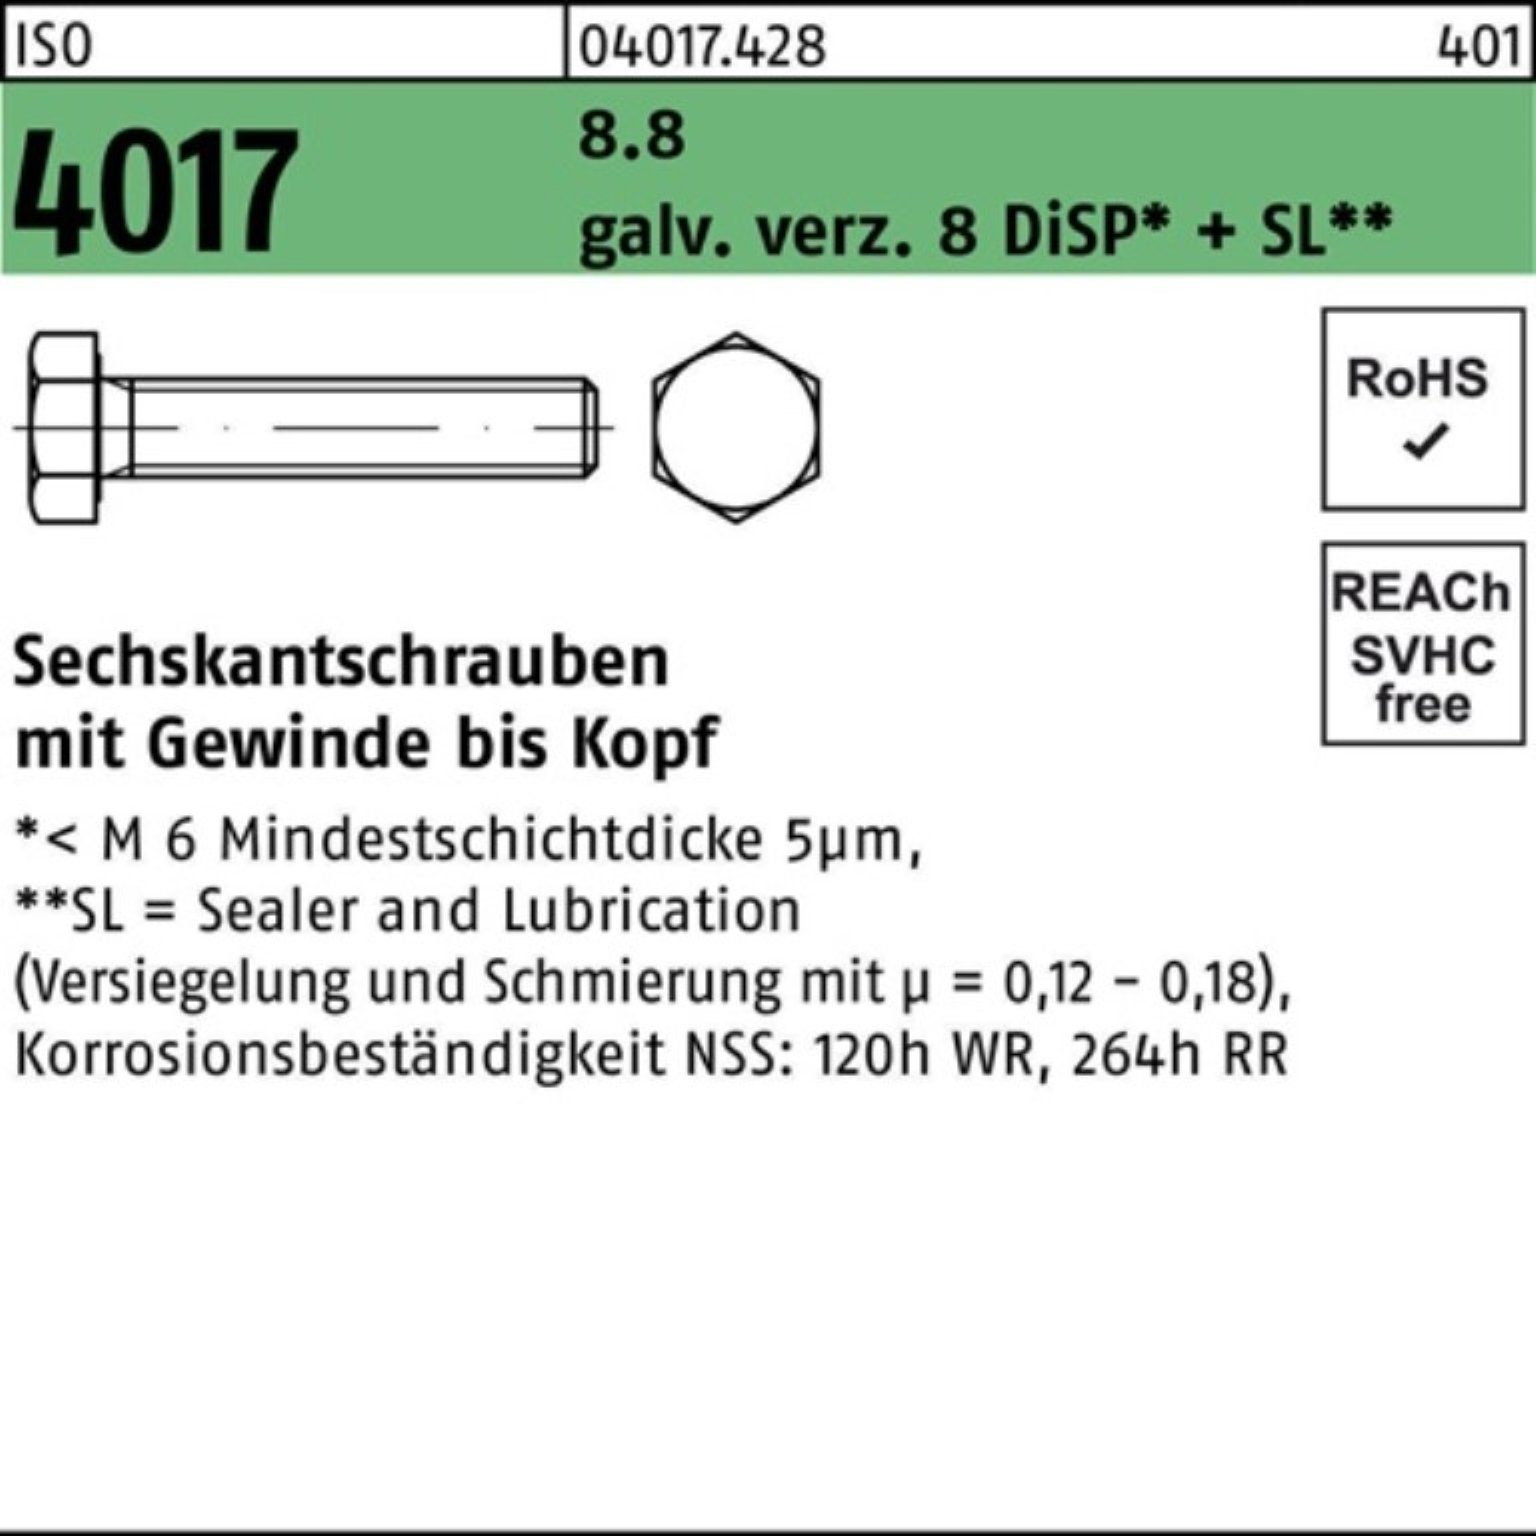 Bufab Sechskantschraube 500er DiSP+ Pack galv.verz. ISO 8.8 25 4017 VG Sechskantschraube 8 M3x